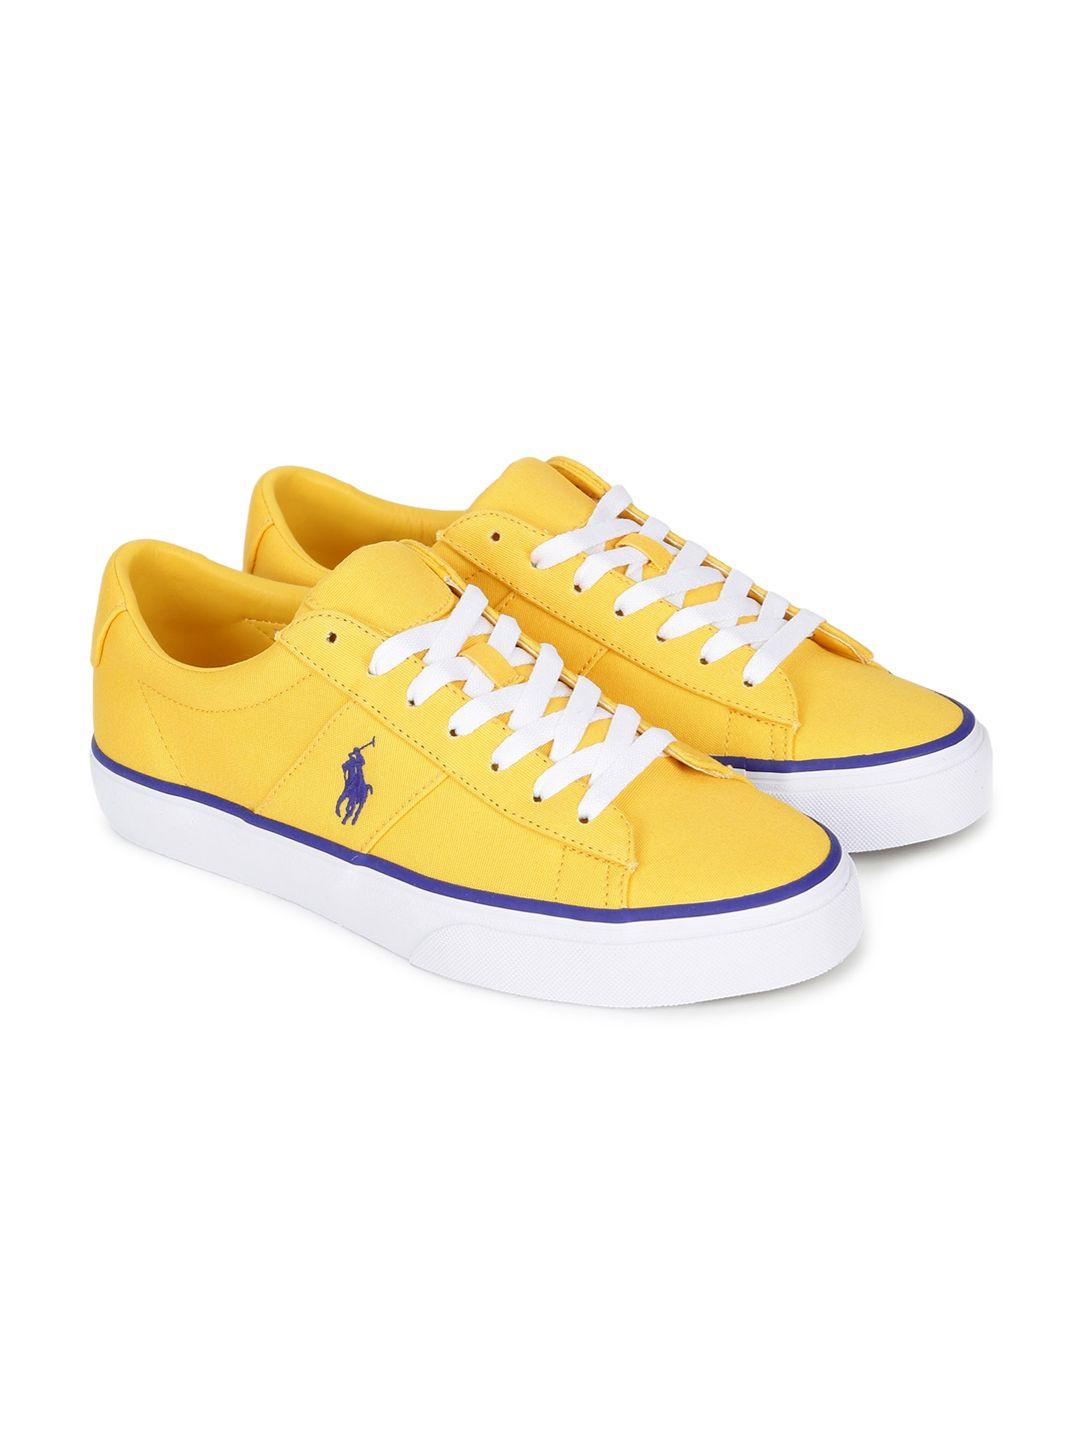 polo ralph lauren men yellow sneakers